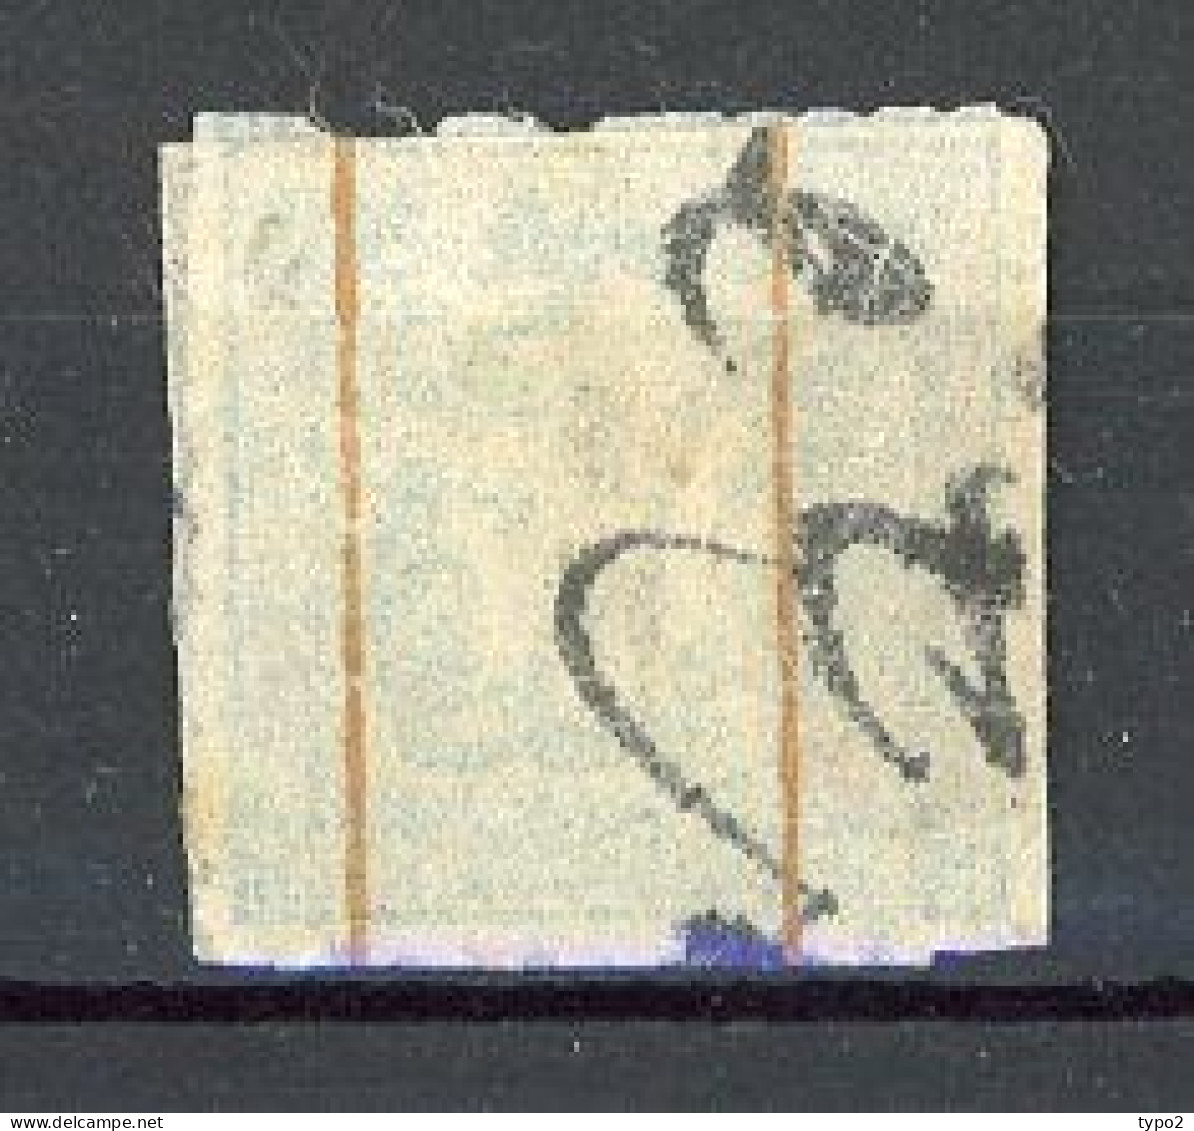 JAPON - 1872 Yv. N° 6 Sans Caractère (o) 1s Bleu Sur Fragment De Lettre Cote 400 Euro BE R 2 Scans - Gebraucht